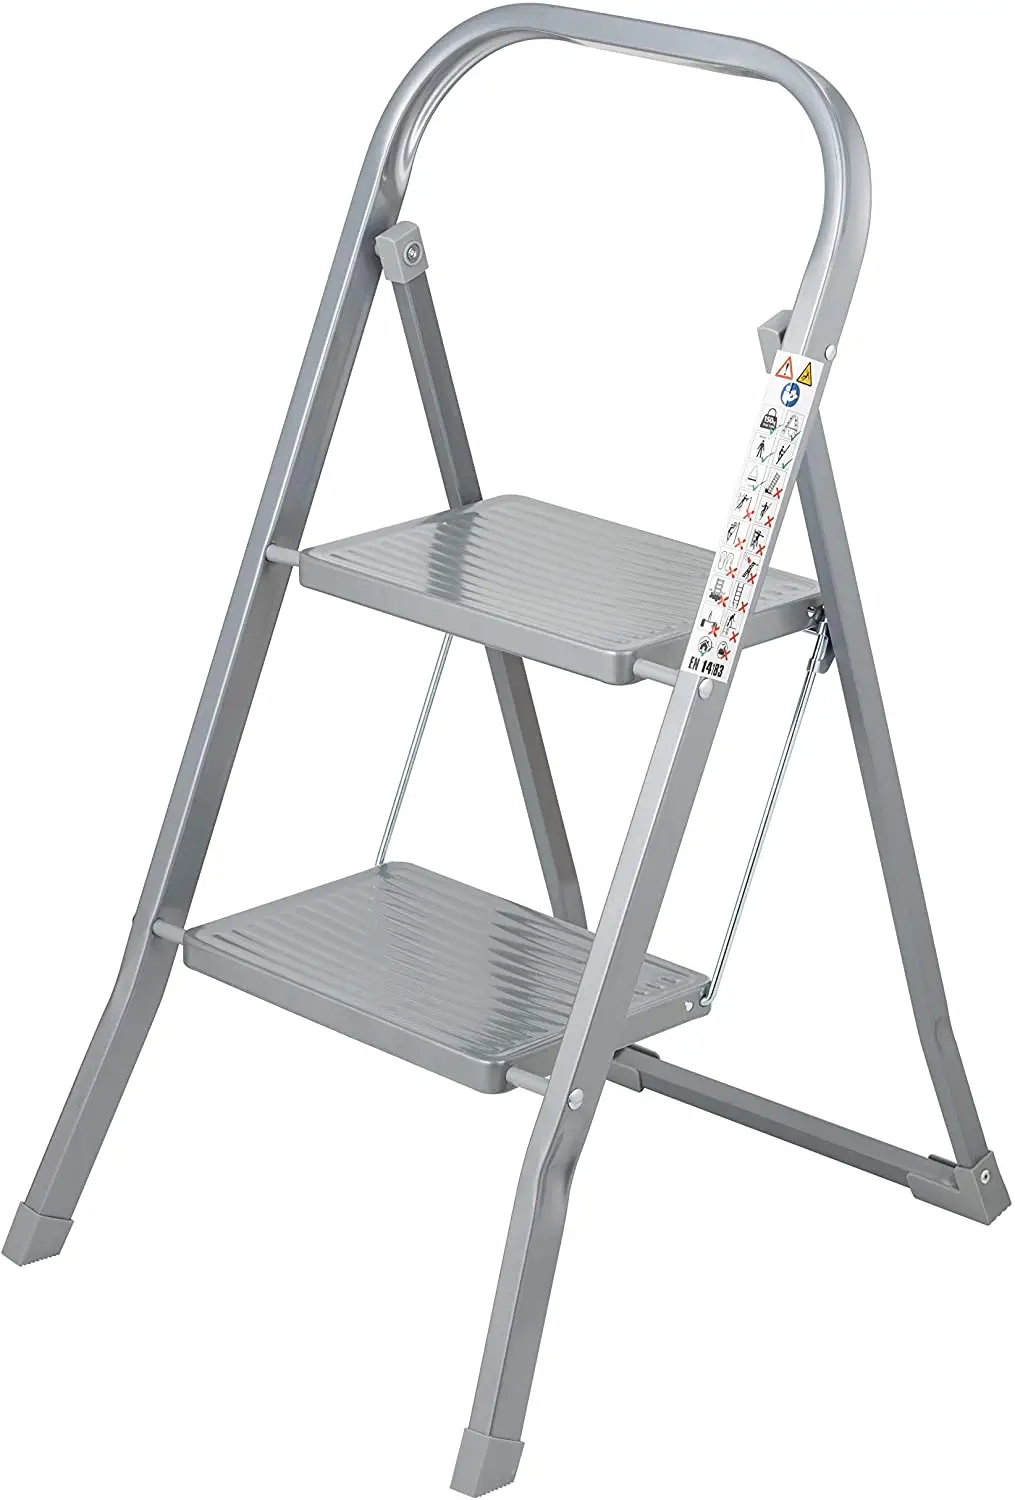 Escalera de acero de nivel 2 - pies resbaladizos - diseño plegable de fácil almacenamiento - opción ideal para un fabricante doméstico / de cocina